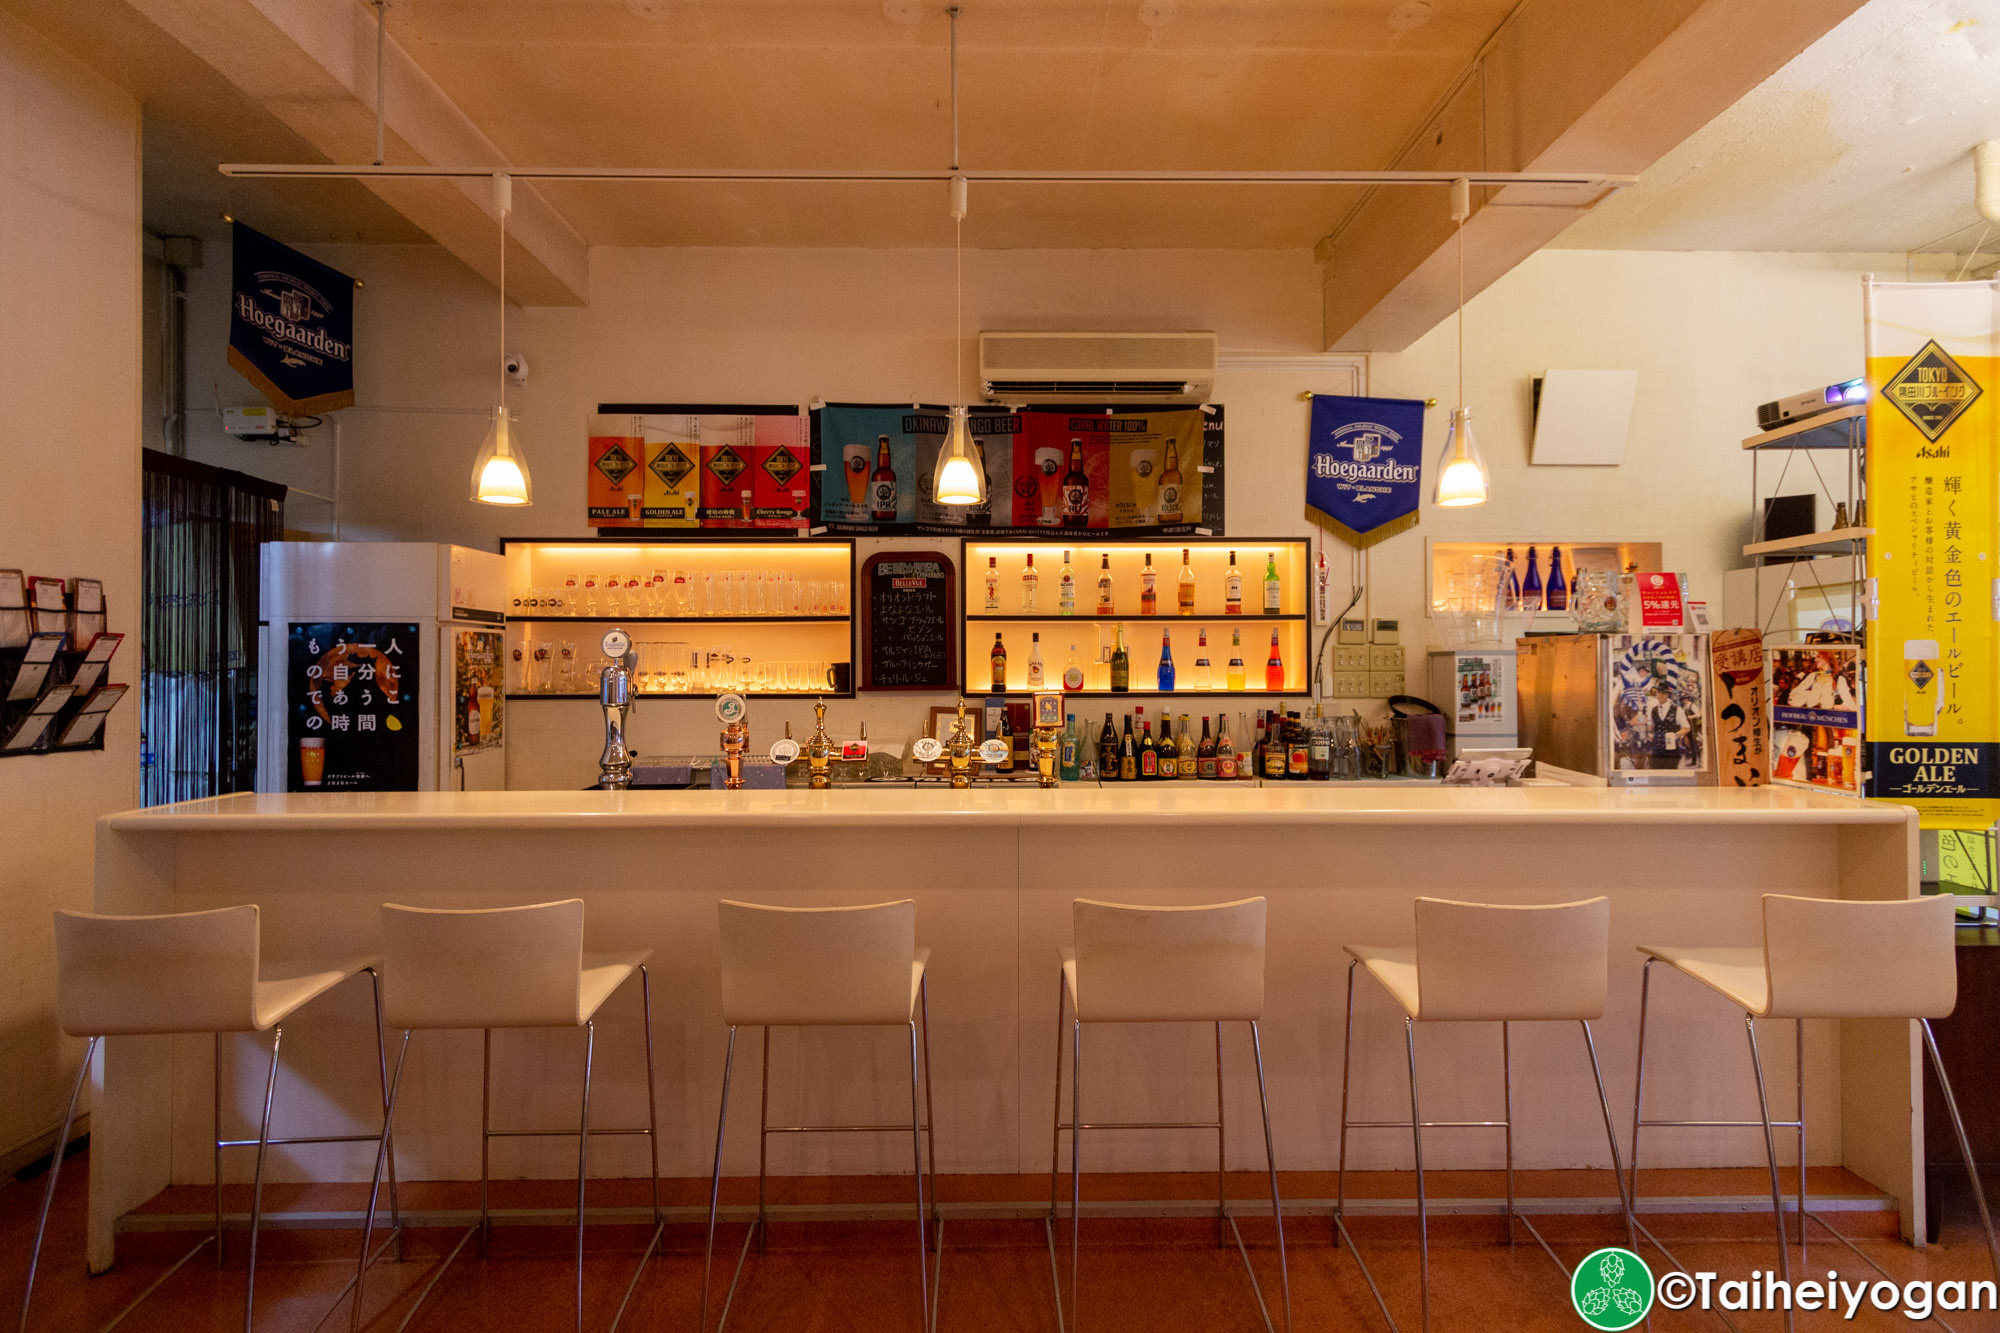 Beerpara Dining - Interior - Bar Counter Seating